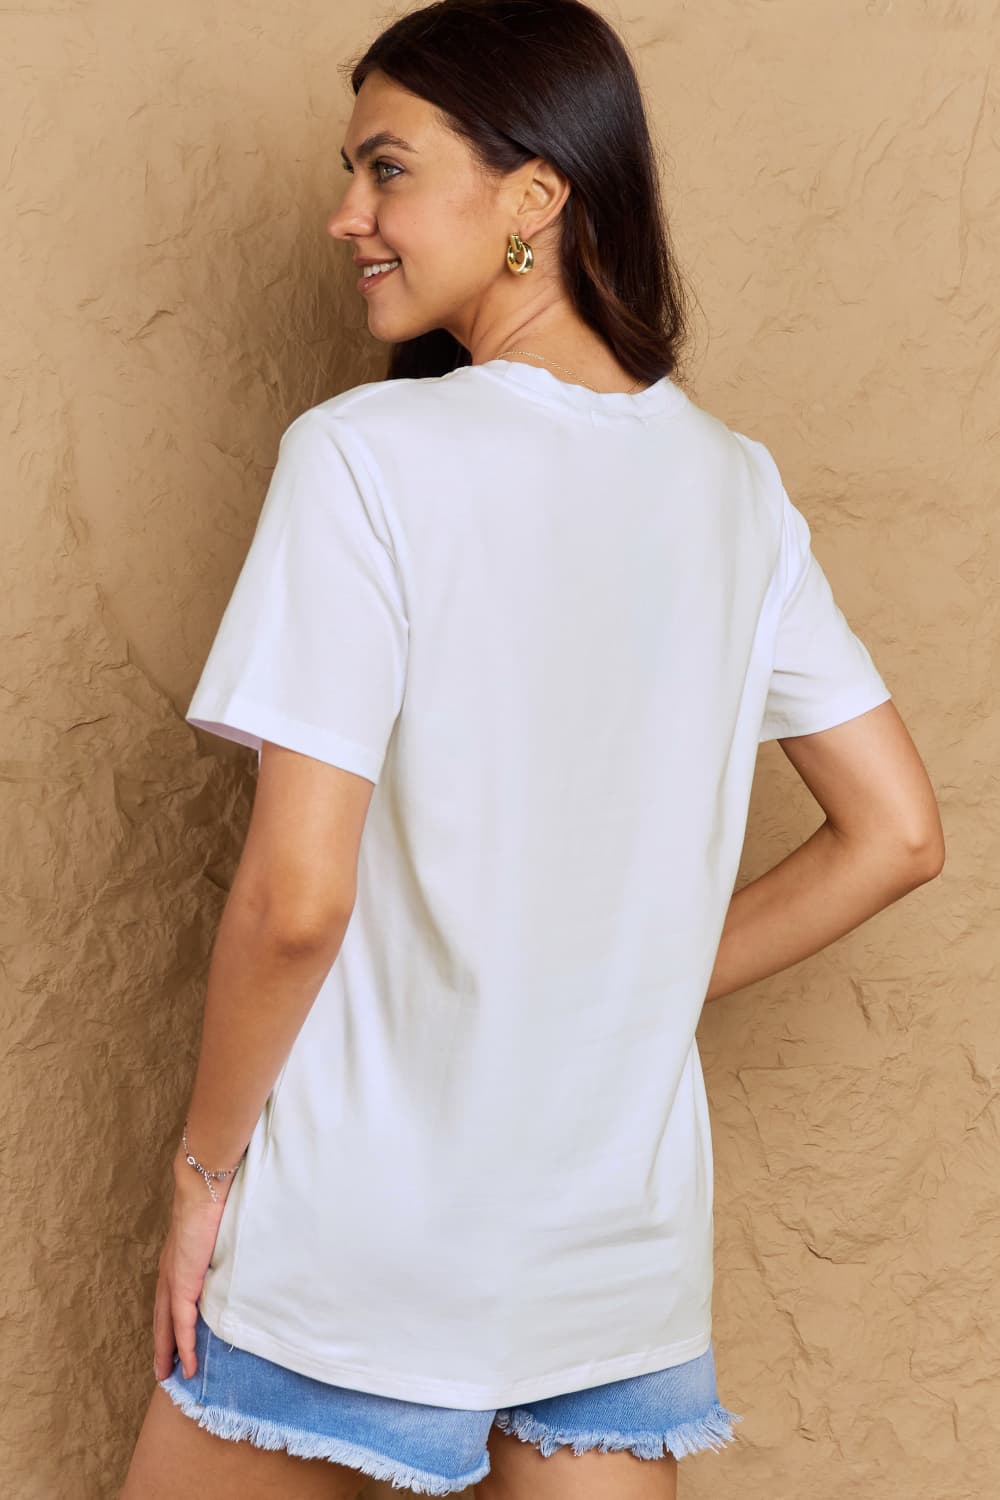 Full Size Jack-O'-Lantern Graphic T-Shirt